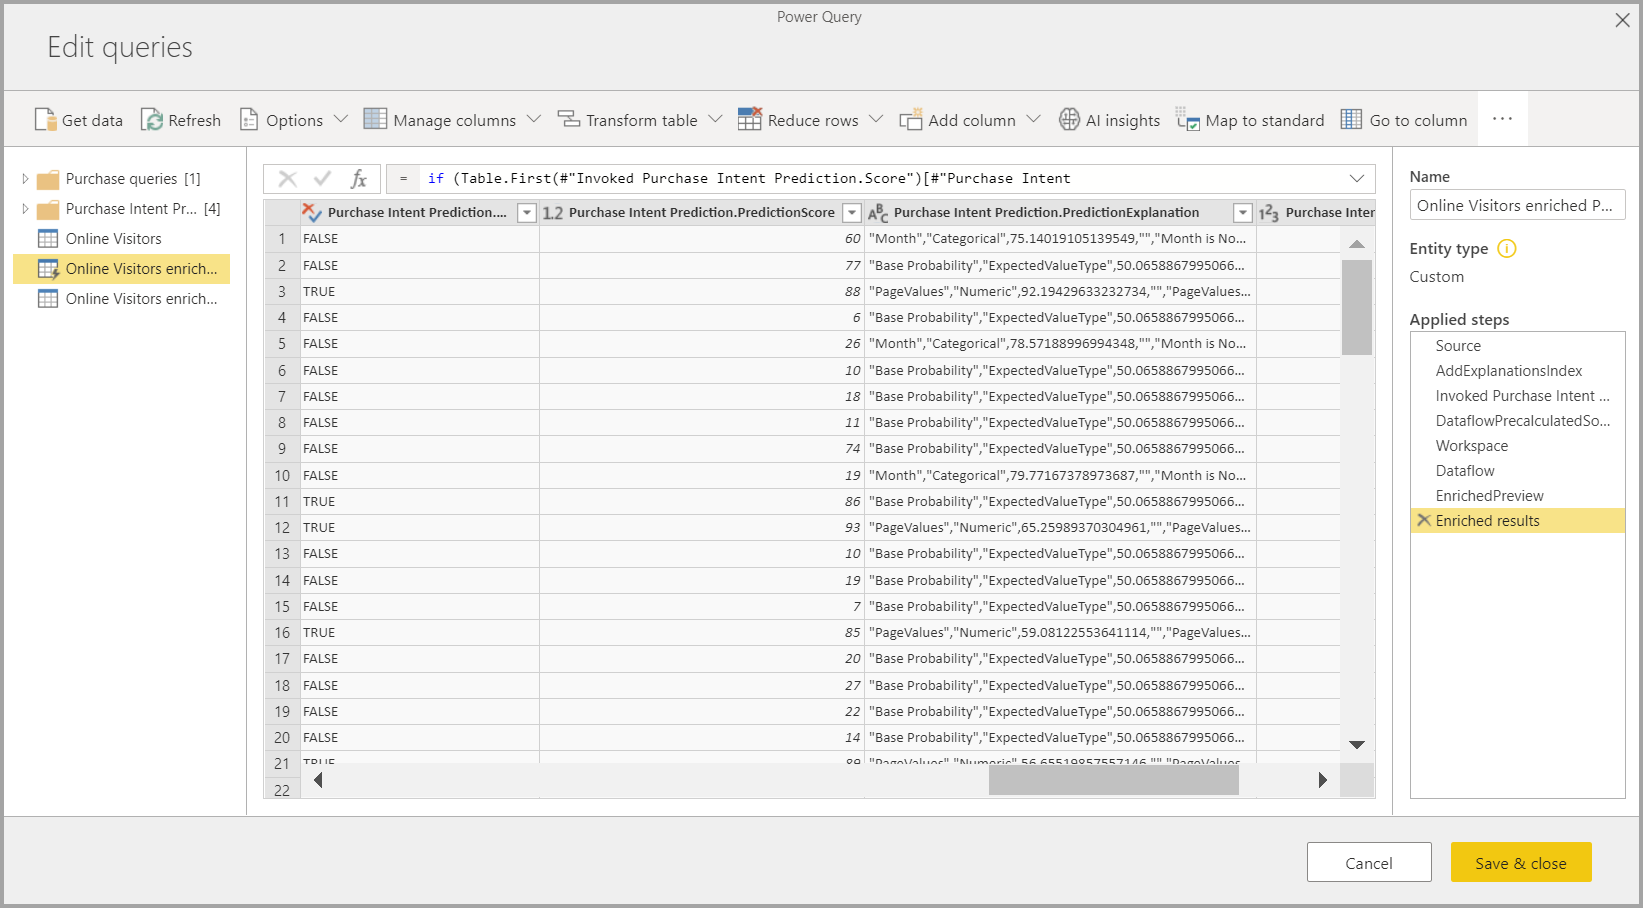 Capture d’écran de Power Query montrant les résultats d’AutoML.